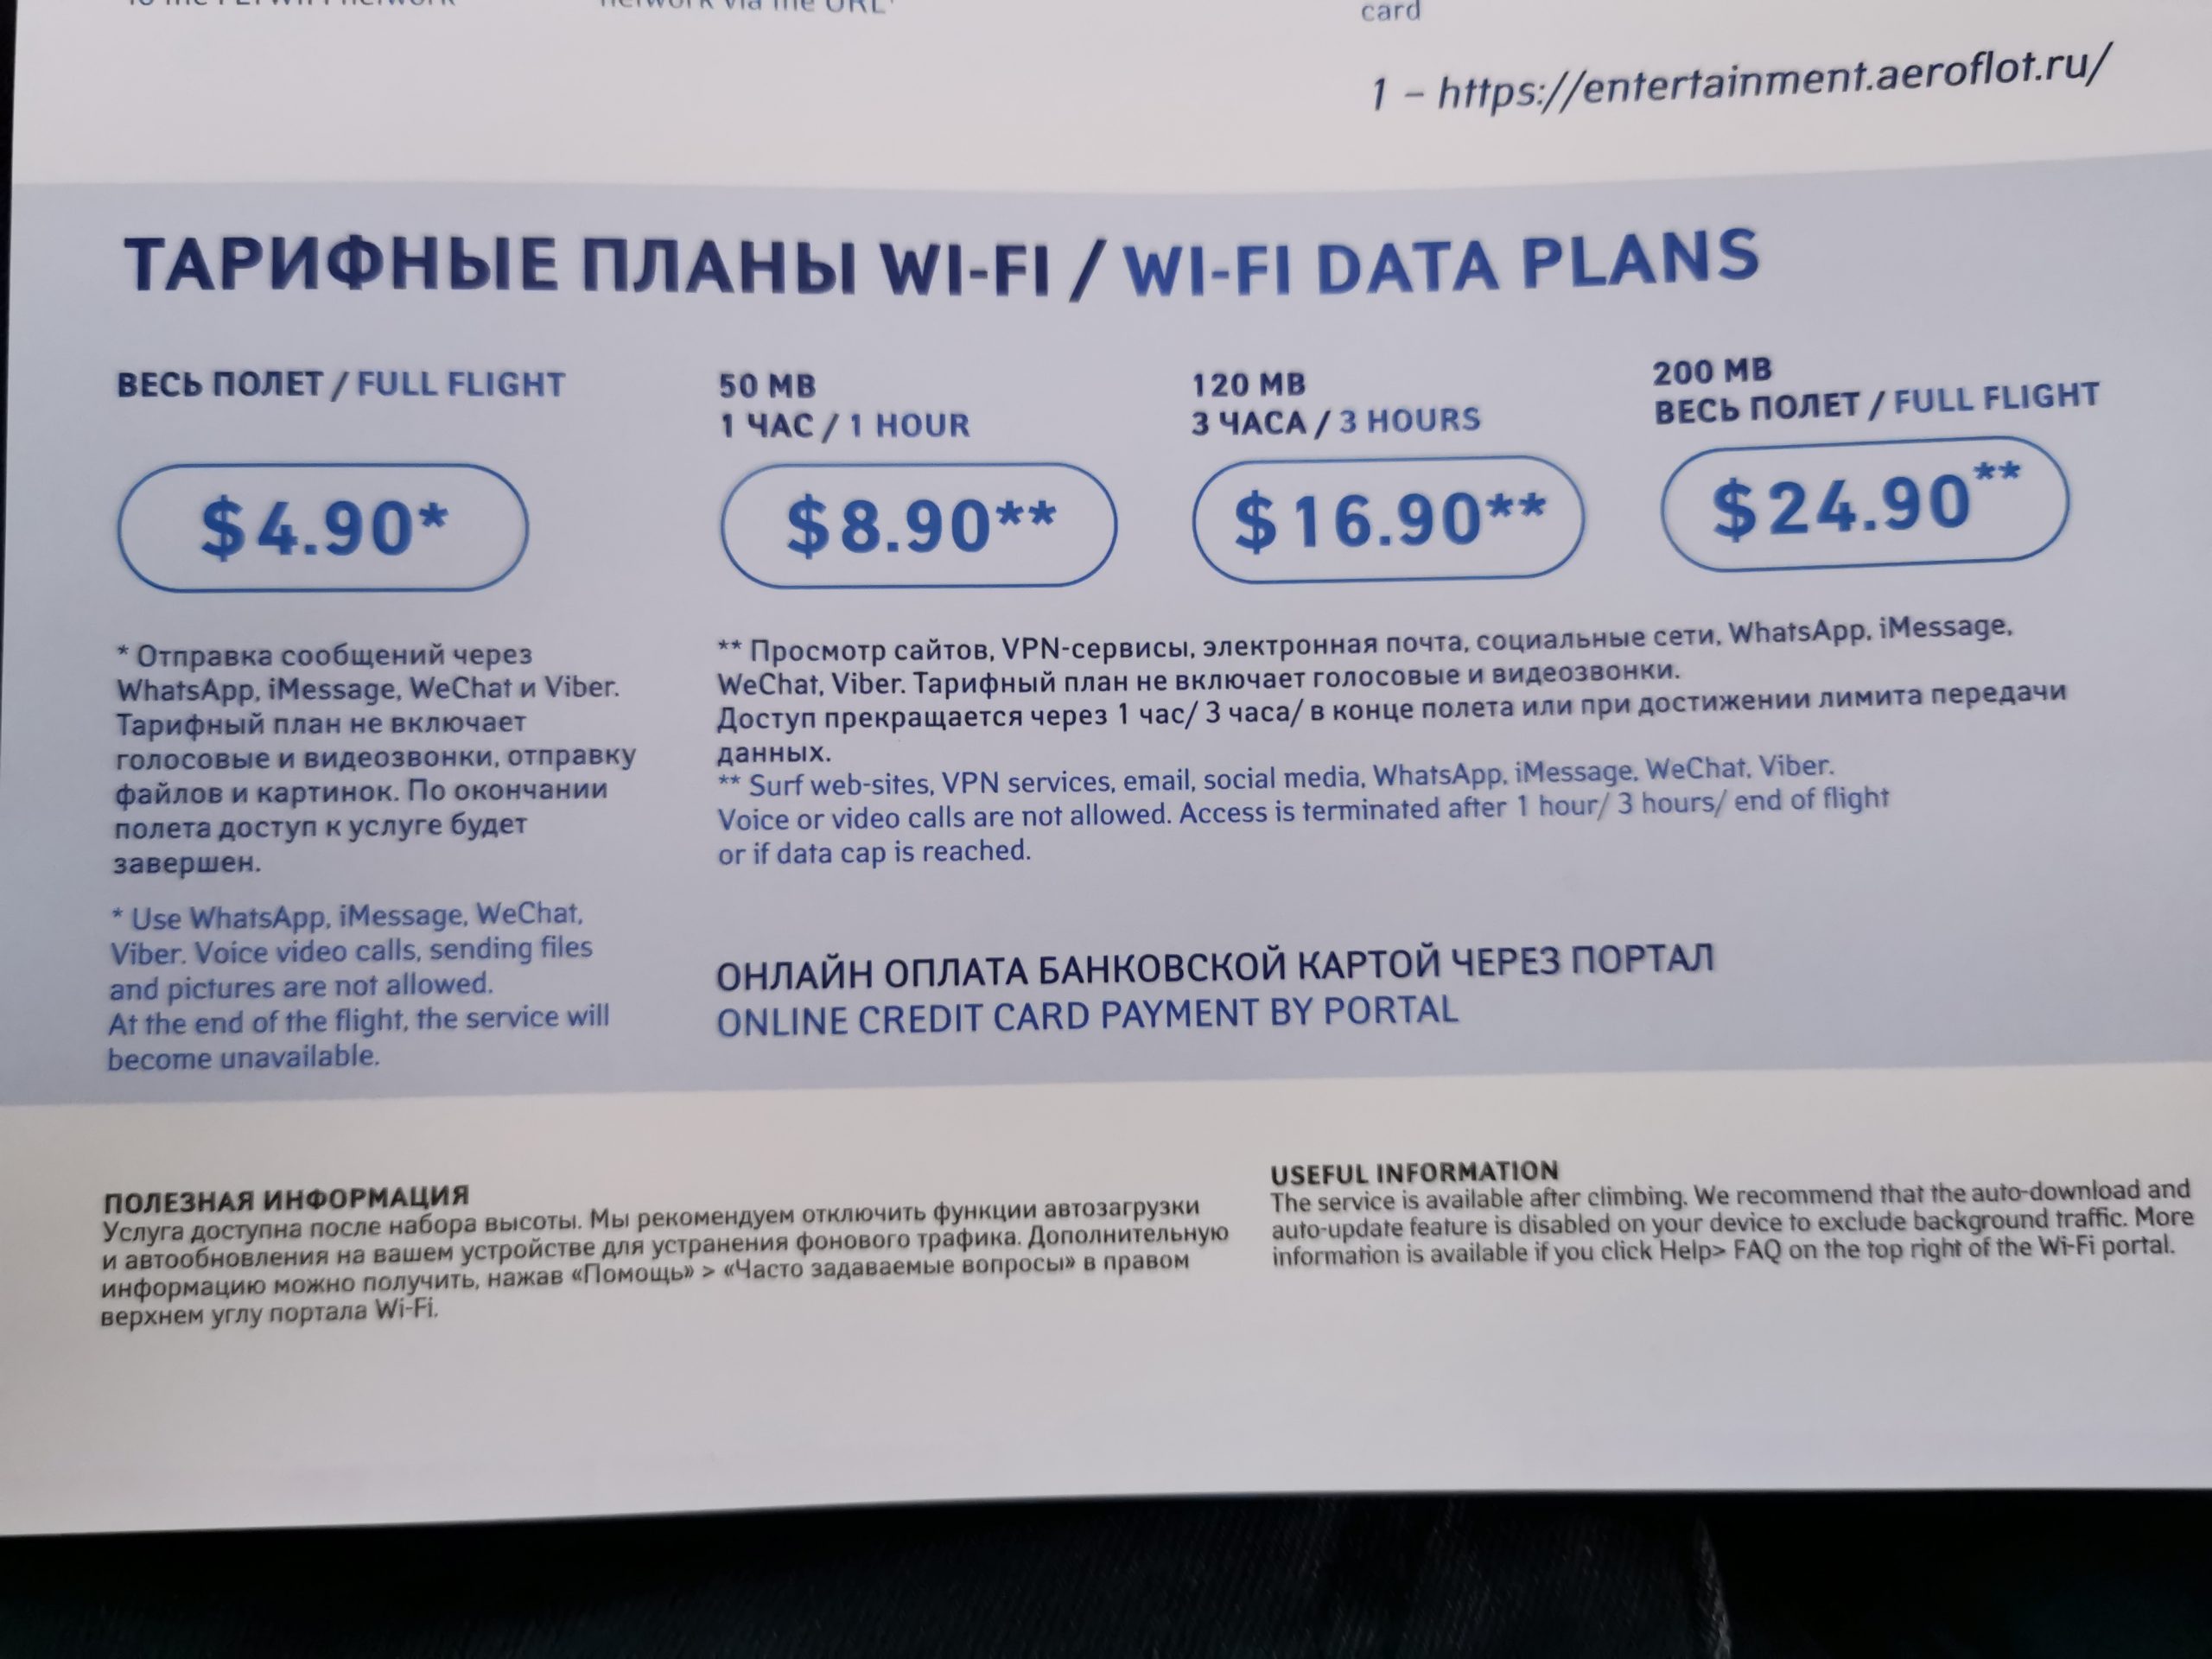 Сколько стоит интернет в самолете?